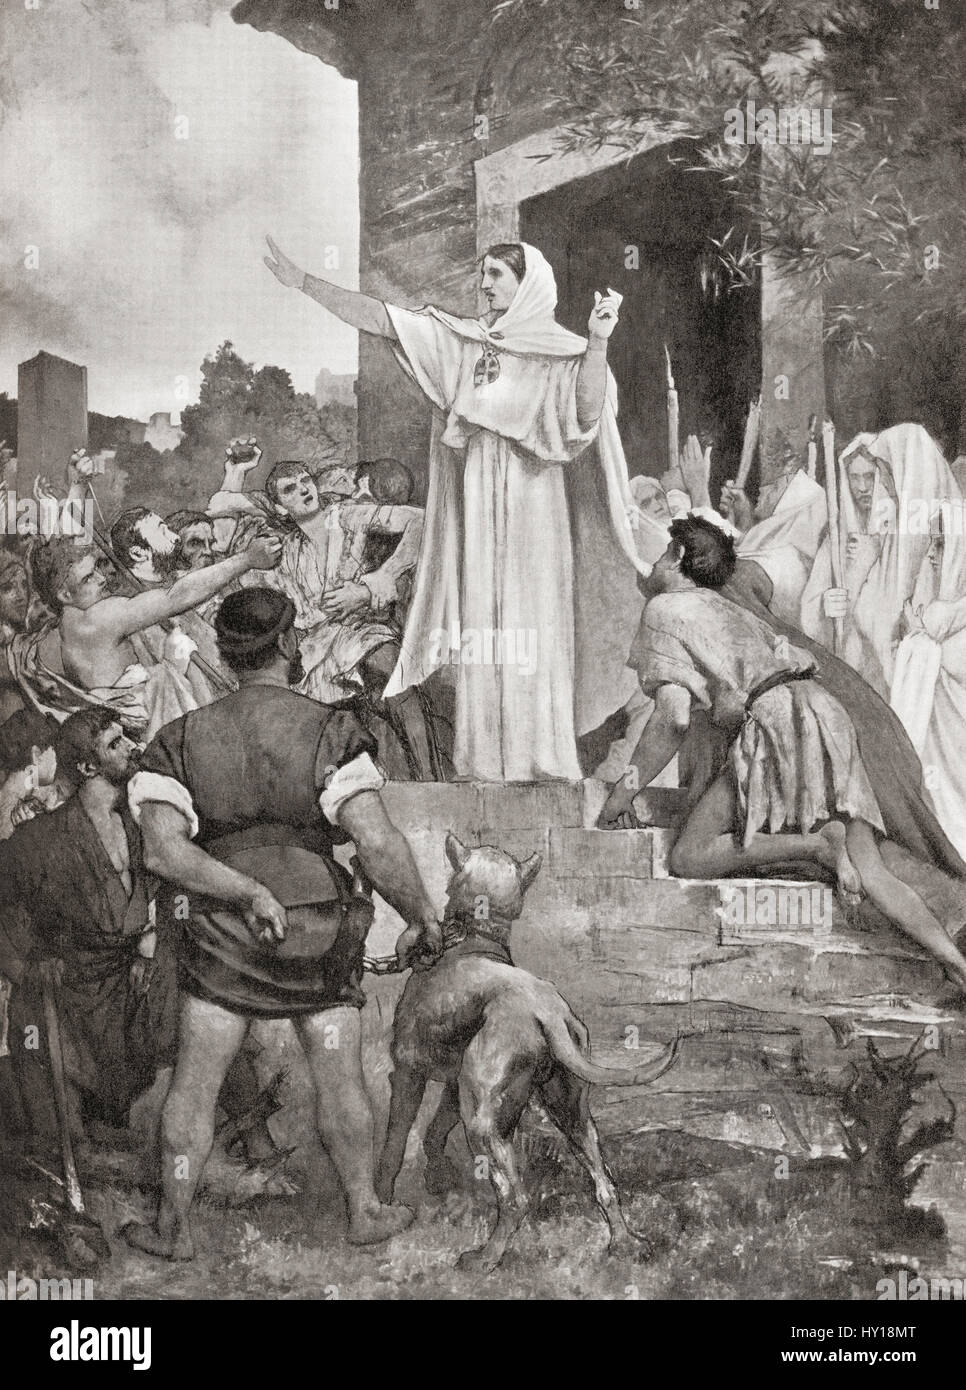 St. Genevieve beruhigt die Parisern auf dem Ansatz von Attila der Hunne, 451AD.  Hutchinson Geschichte der Nationen veröffentlichte 1915. Stockfoto